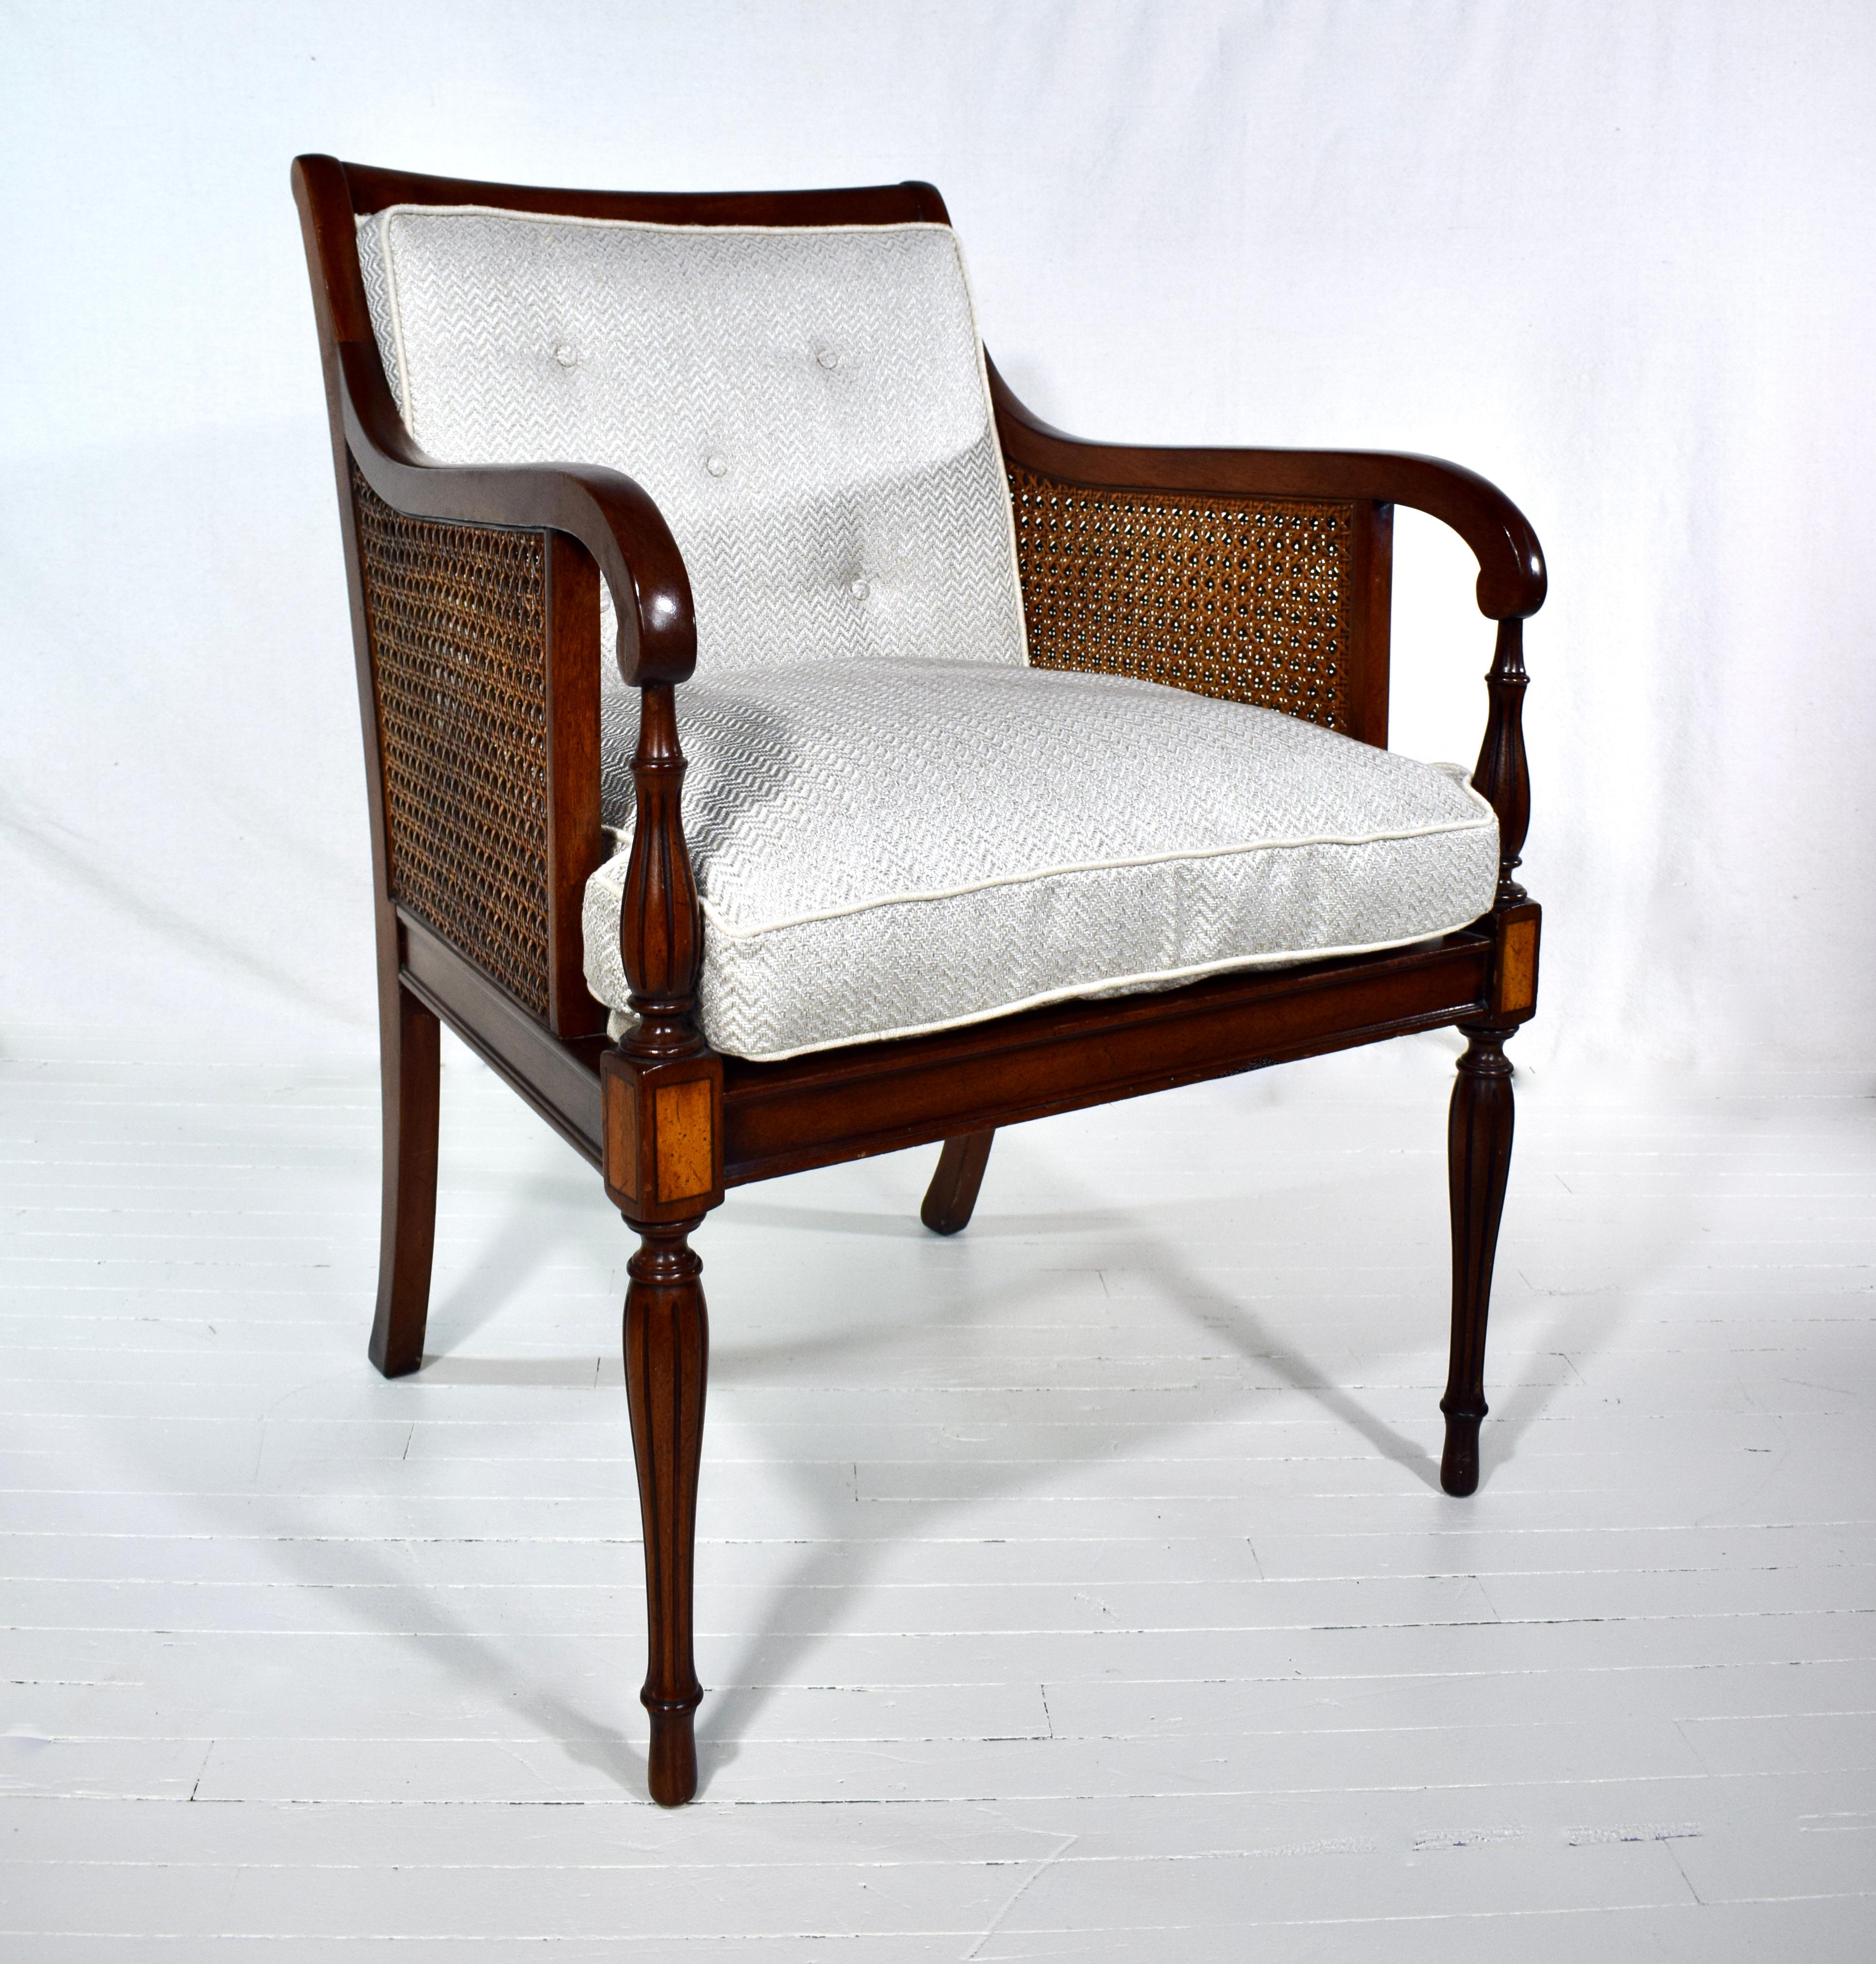 Ein doppelter Sessel im Regency-Stil aus Mahagoni und Satinholz im Stil von George III. mit verjüngten Schilfrohr und gedrechselten Beinen. Der Stuhl ist vollständig von Hand detailliert mit schön erhaltenen doppelten caning gut in Takt. Neue